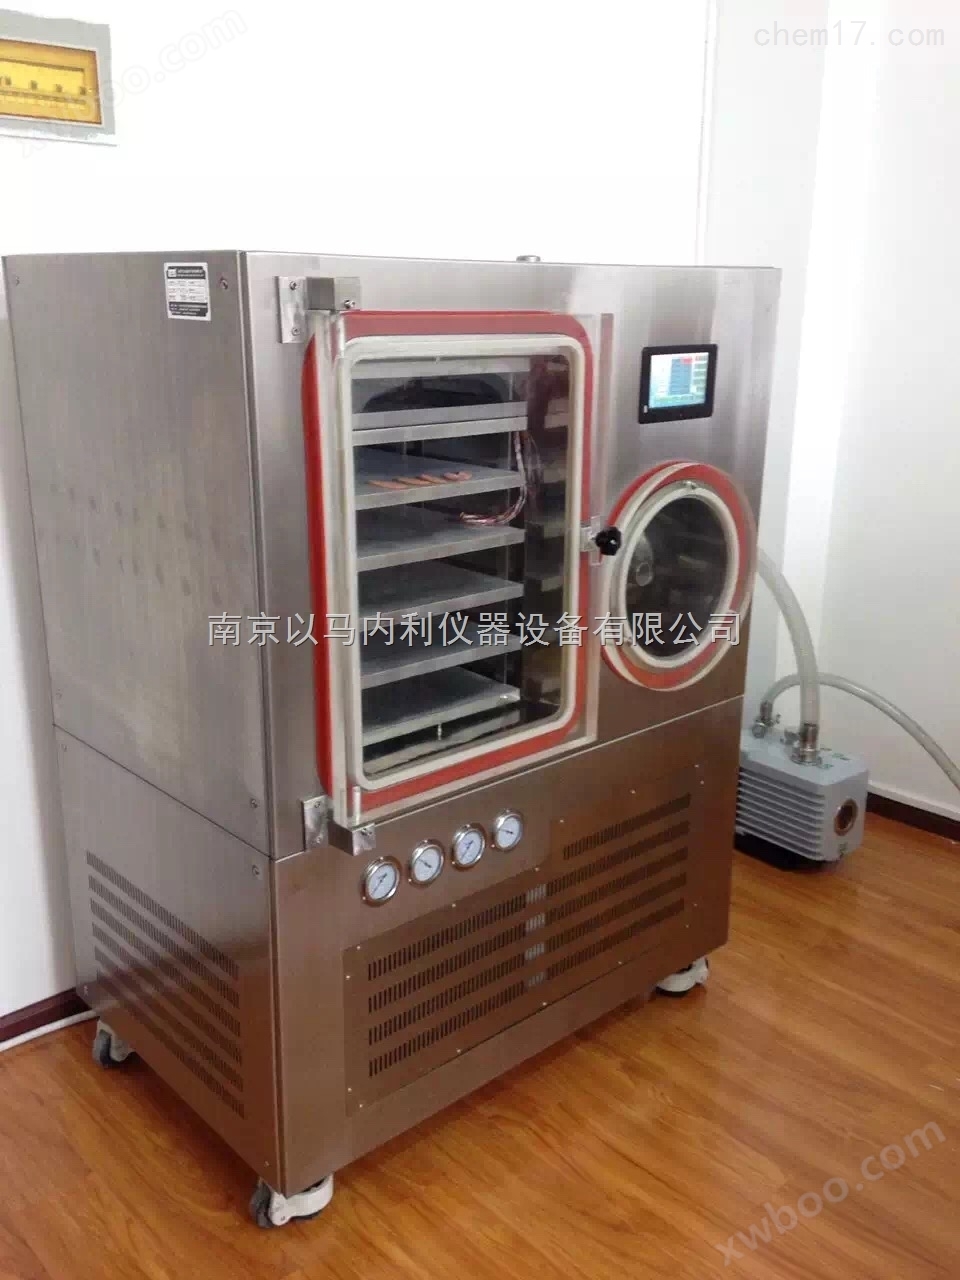 重庆1平方米压盖型冷冻干燥机